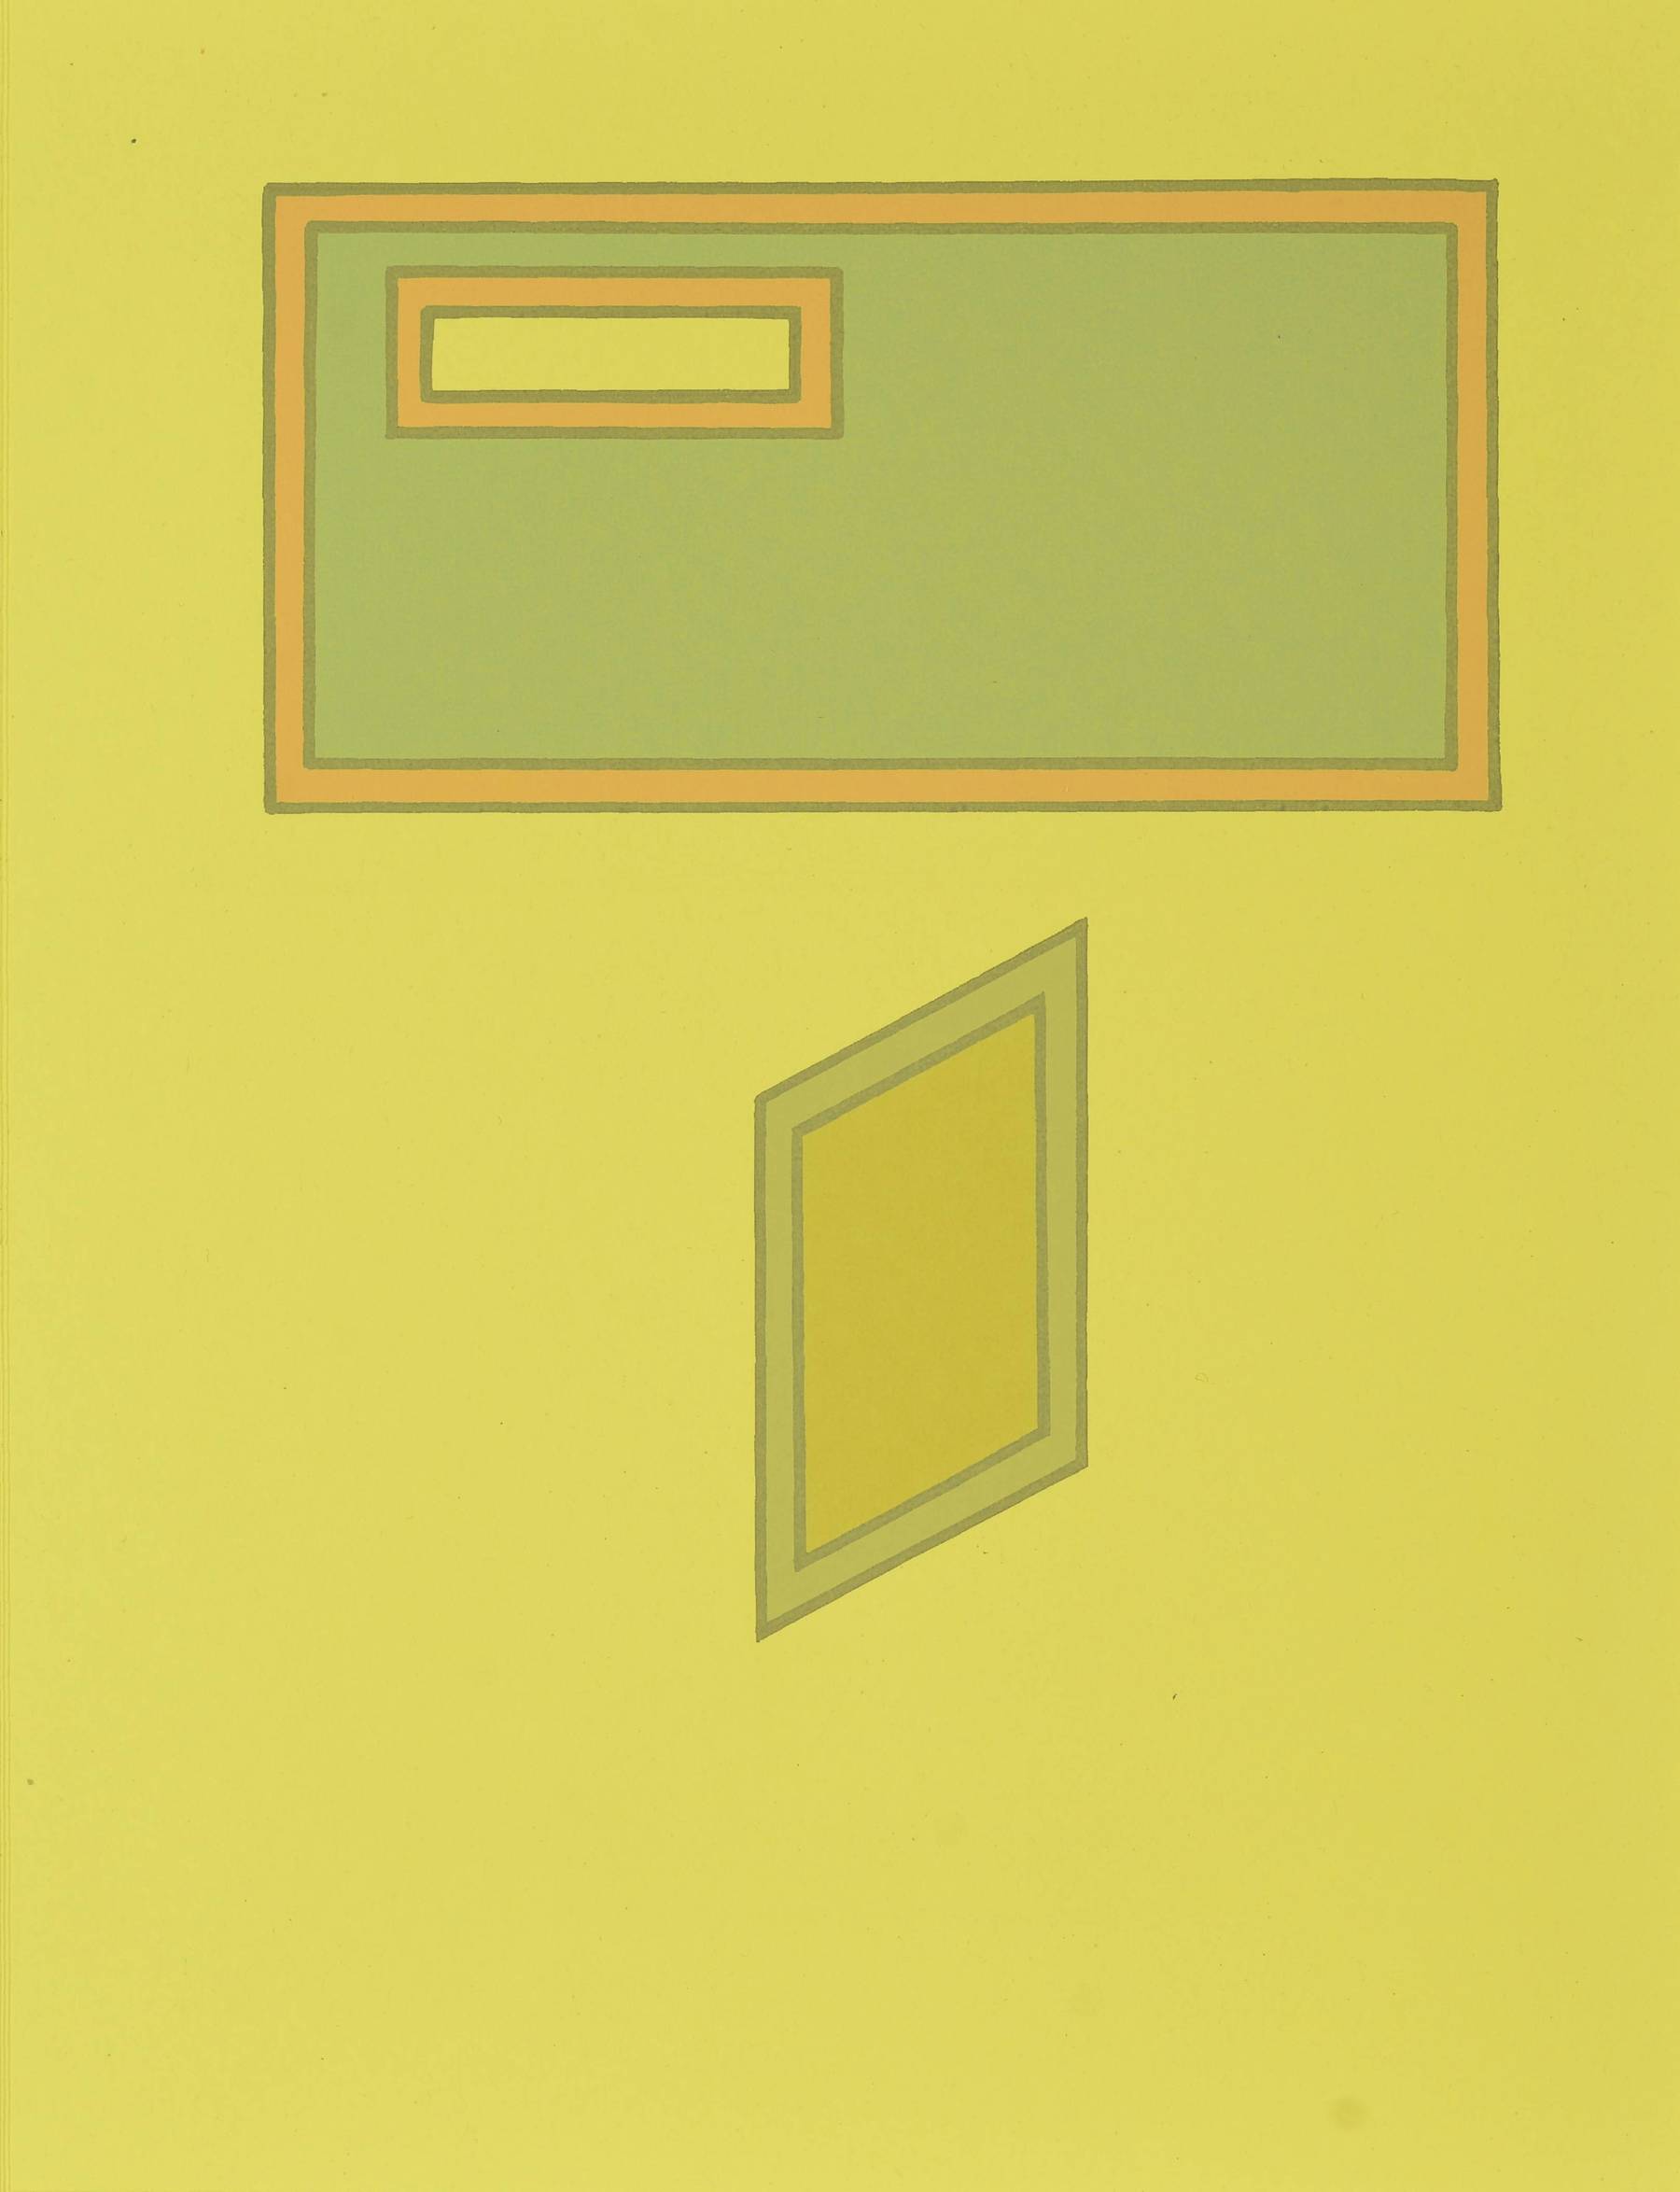 Contenu du Formes géométriques sur fond jaune